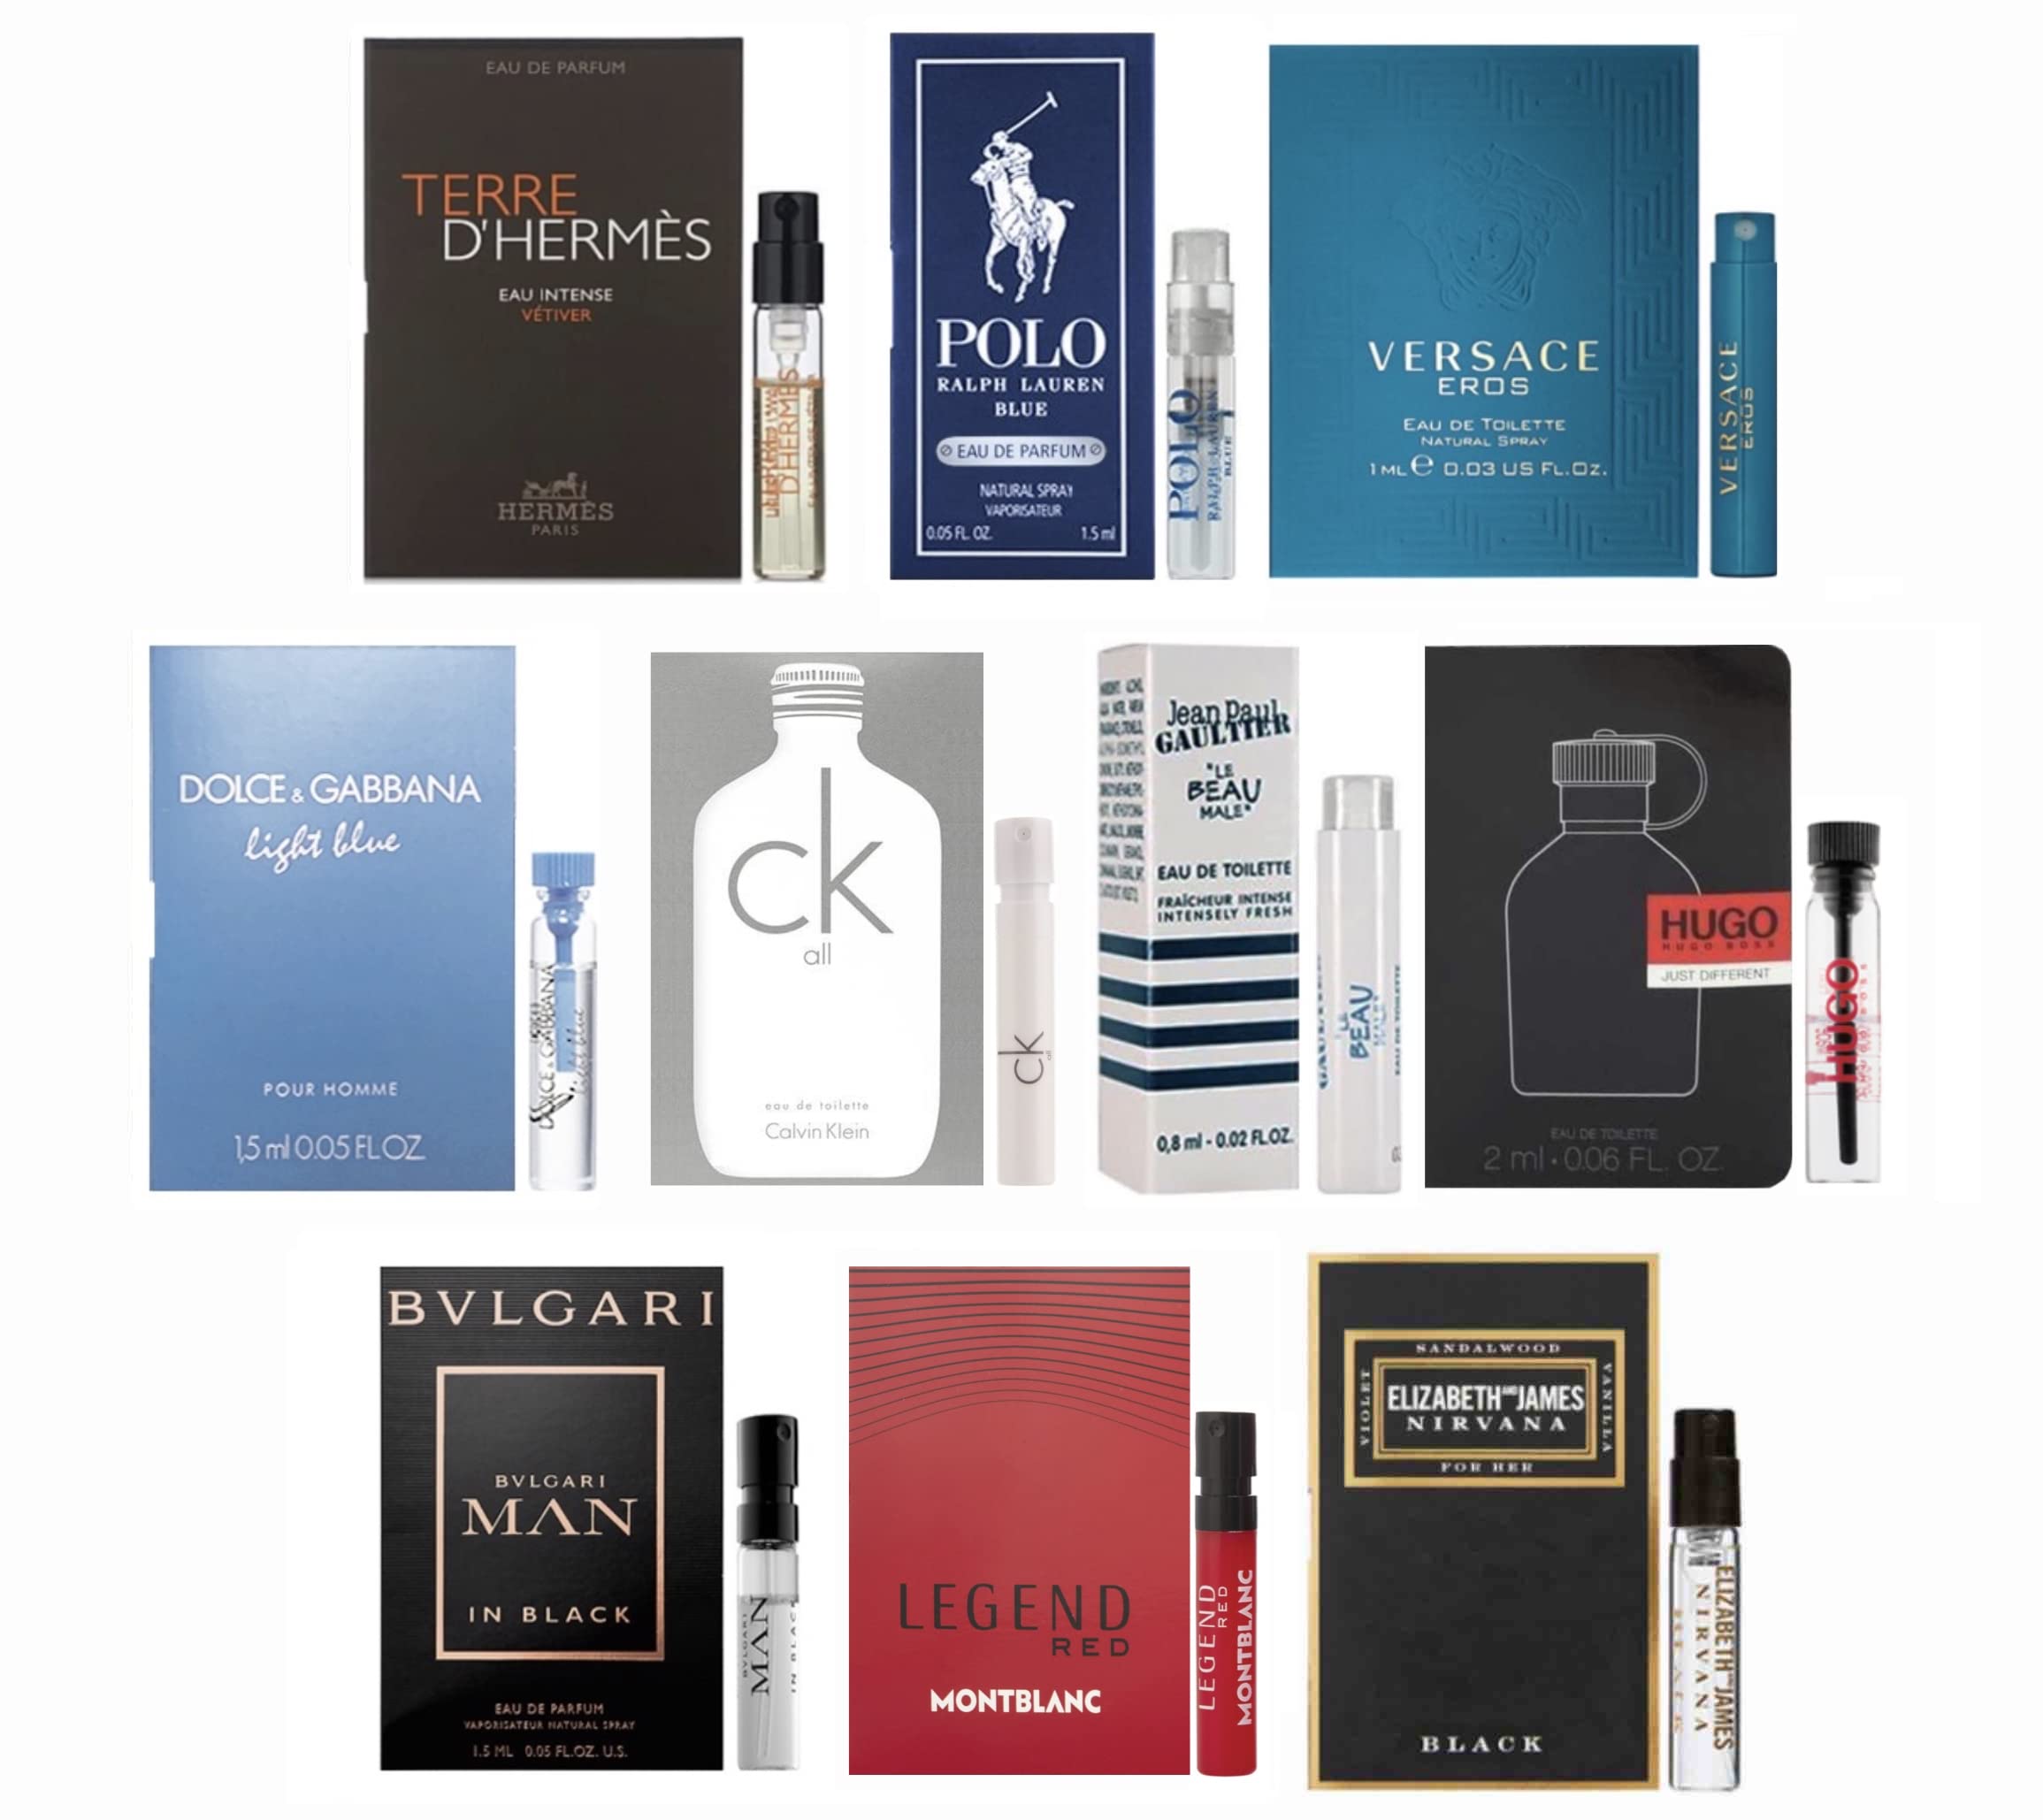 Perfume samples for men